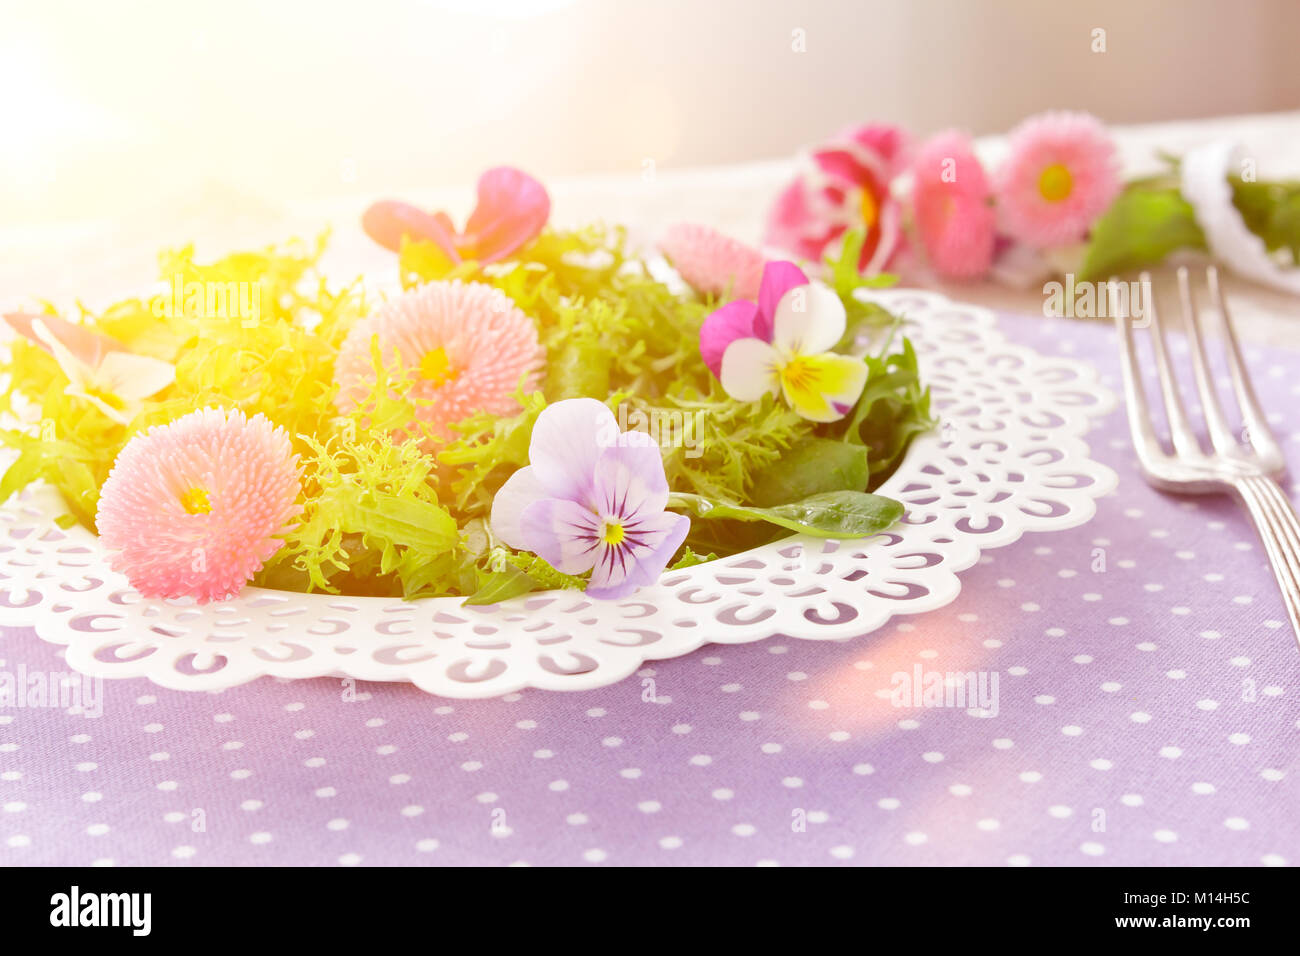 Piastra bianca con una insalata verde mista le foglie di lattuga e commestibile daisy e pansy fiori, insieme con una forcella di vintage su un nostalgico backgroun lilla Foto Stock